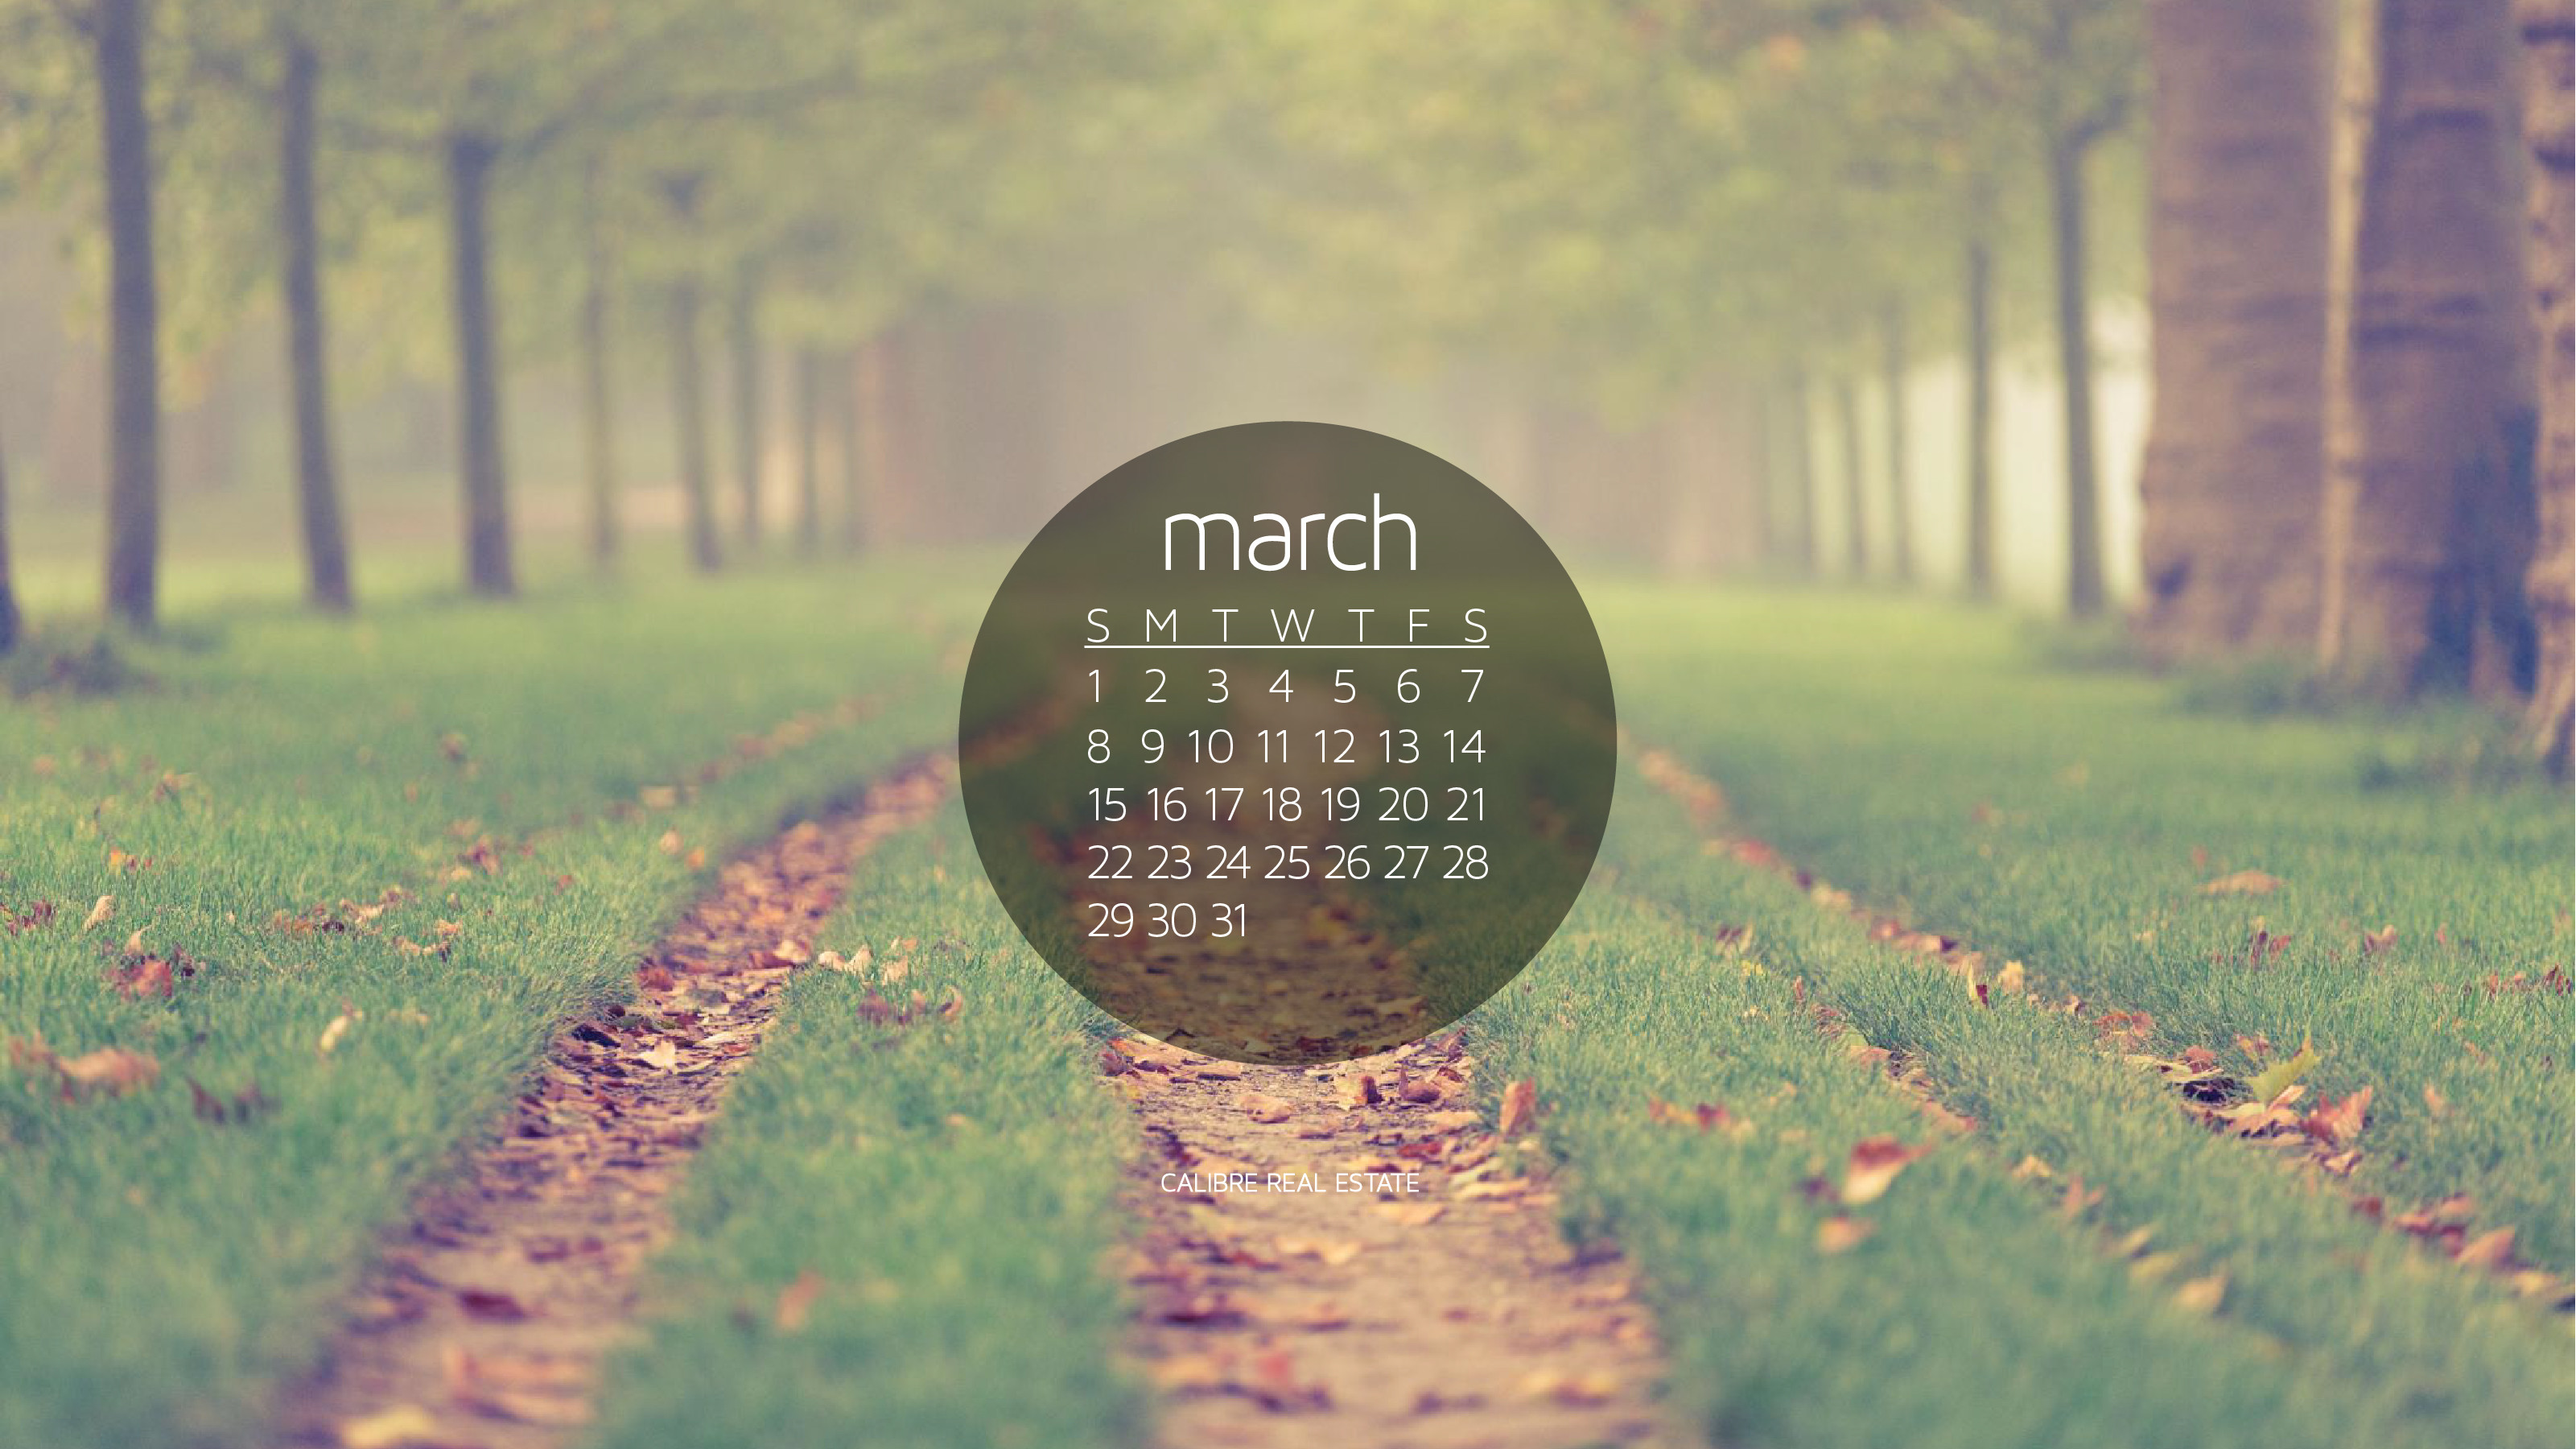 3201x1800 March 2015 Calendar Wallpaper for Desktop